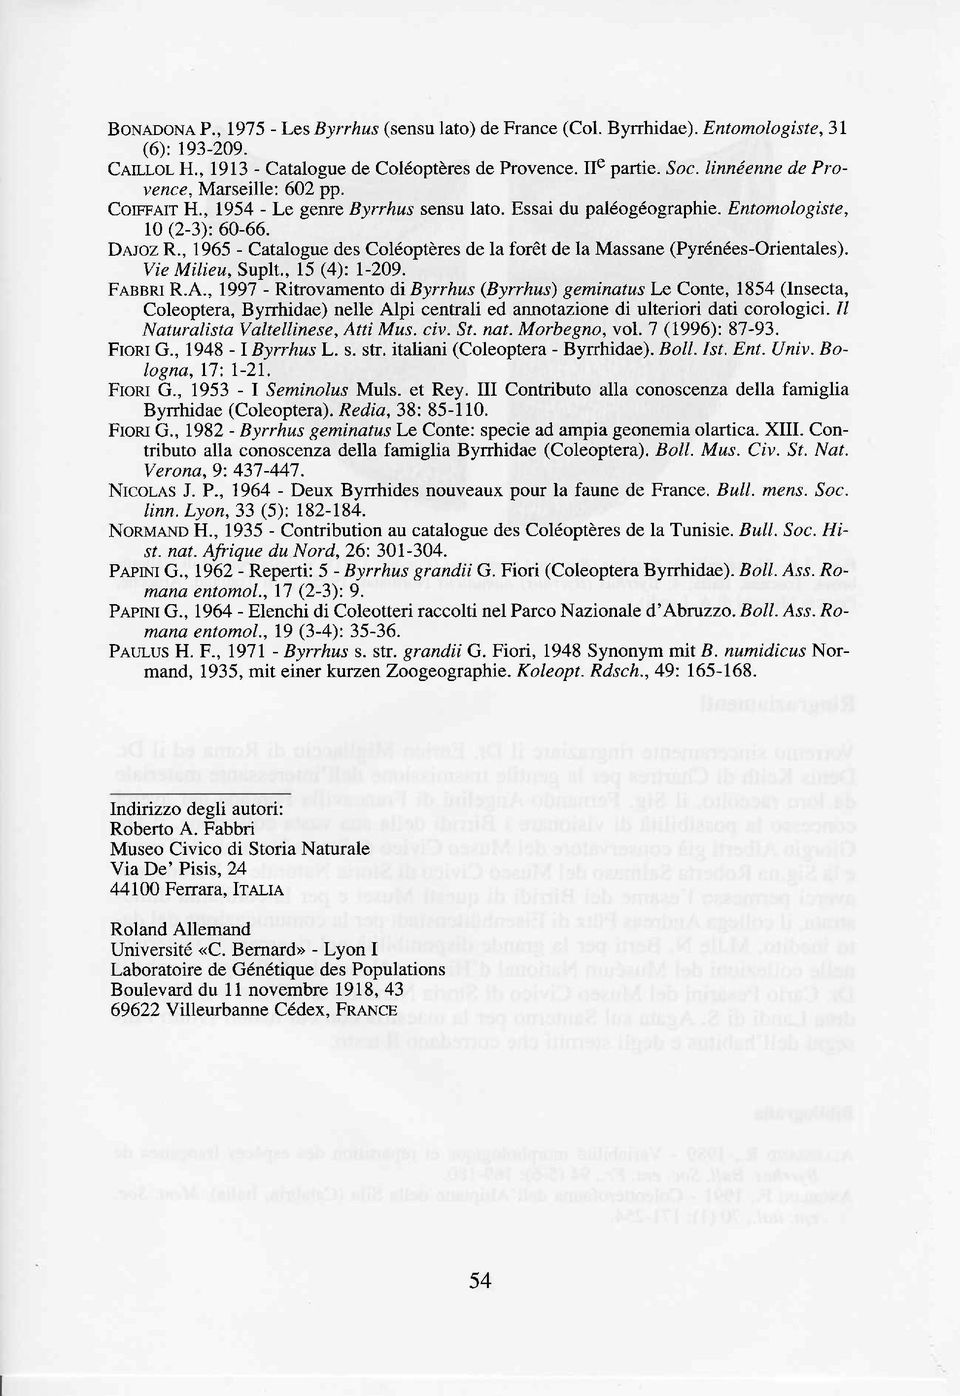 , 1965 - Catalogue des Coléoptères de la forèt de la Massane (Pyrénées-Orientales). Vie Mílieu, Suplt., 15 (4): l-209. FnssRt R.A.